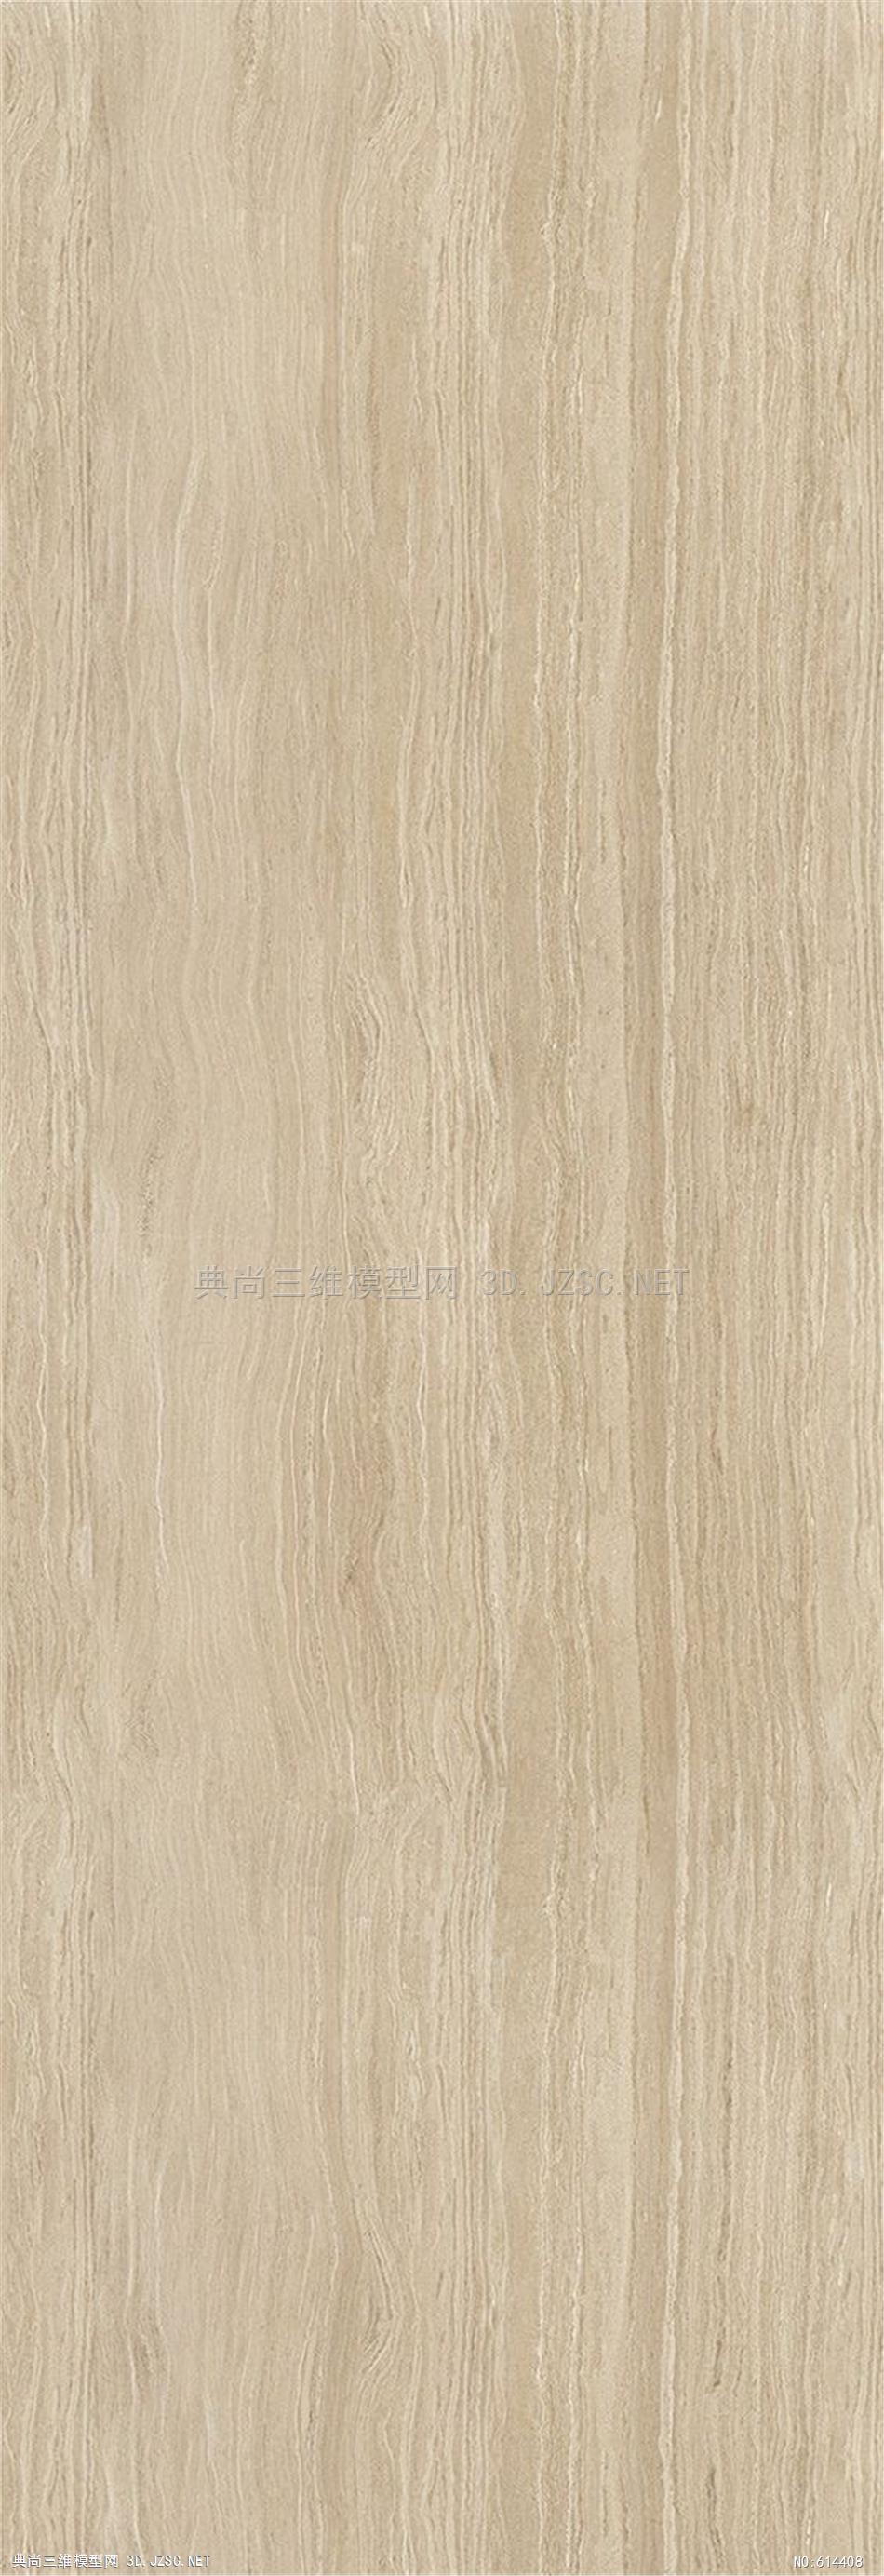 木饰面木纹木材高清材质贴图291材质贴图